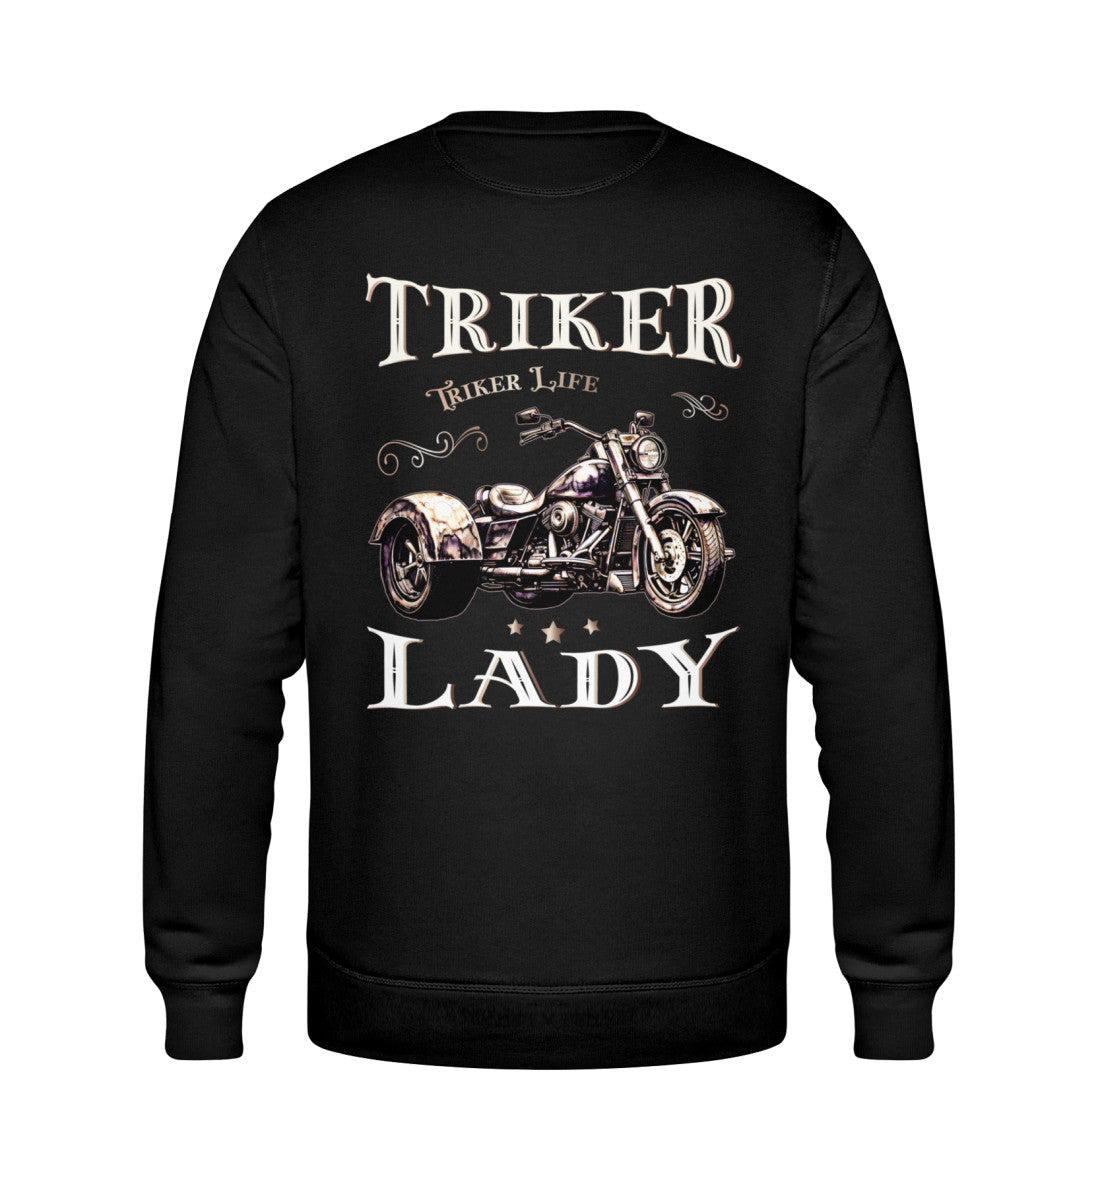 Ein Sweatshirt für Trike Fahrerinnen von Wingbikers mit dem Aufdruck, Triker Lady - Triker Life, im vintage Stil, als Back Print, in schwarz.